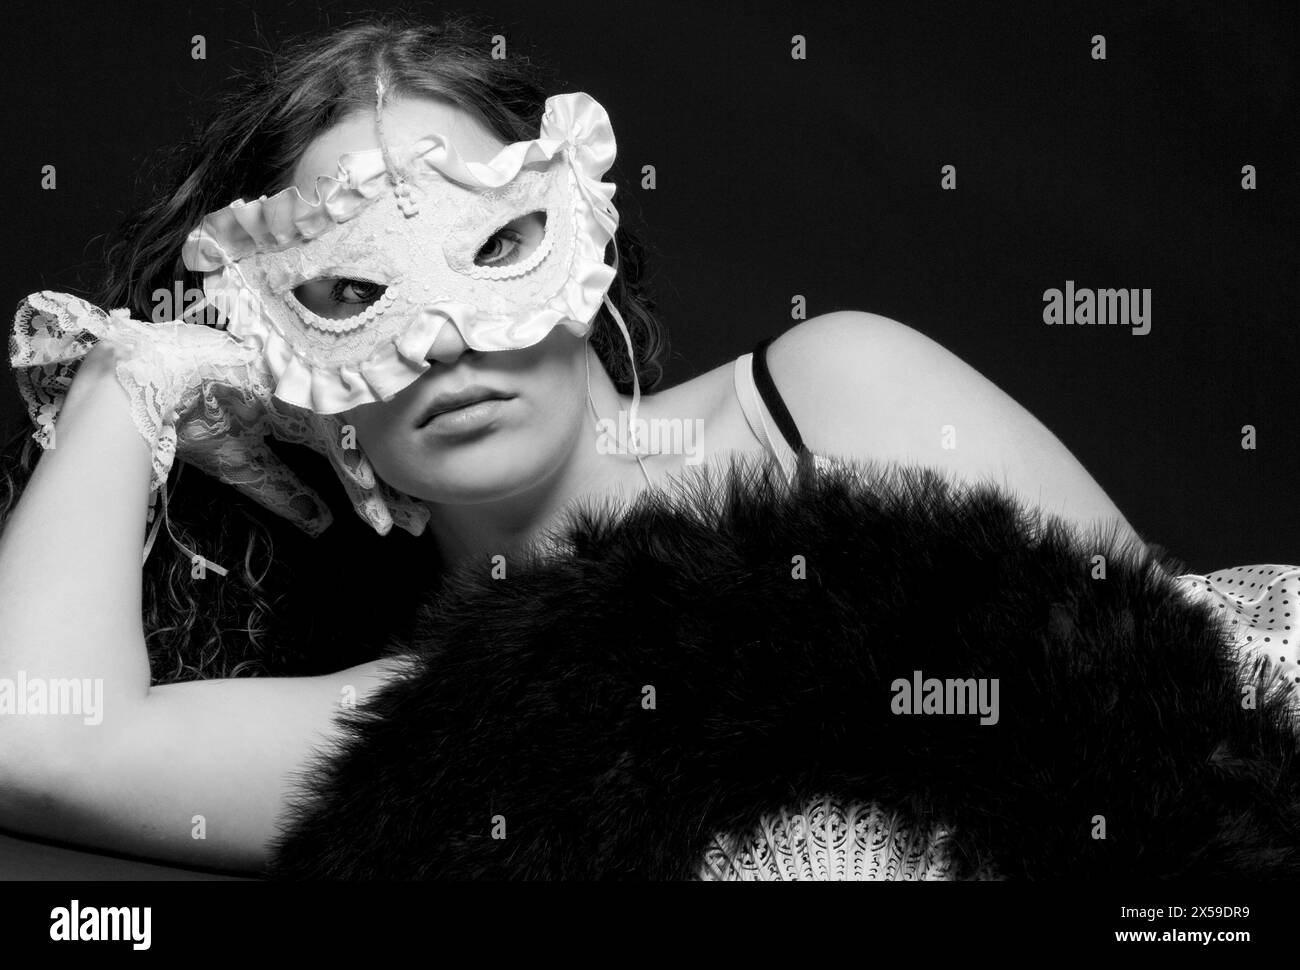 Porträt einer schönen jungen Frau, die Spitzenhandschuhe und Maske trägt, während sie in die Linse blickt, USA. Stockfoto